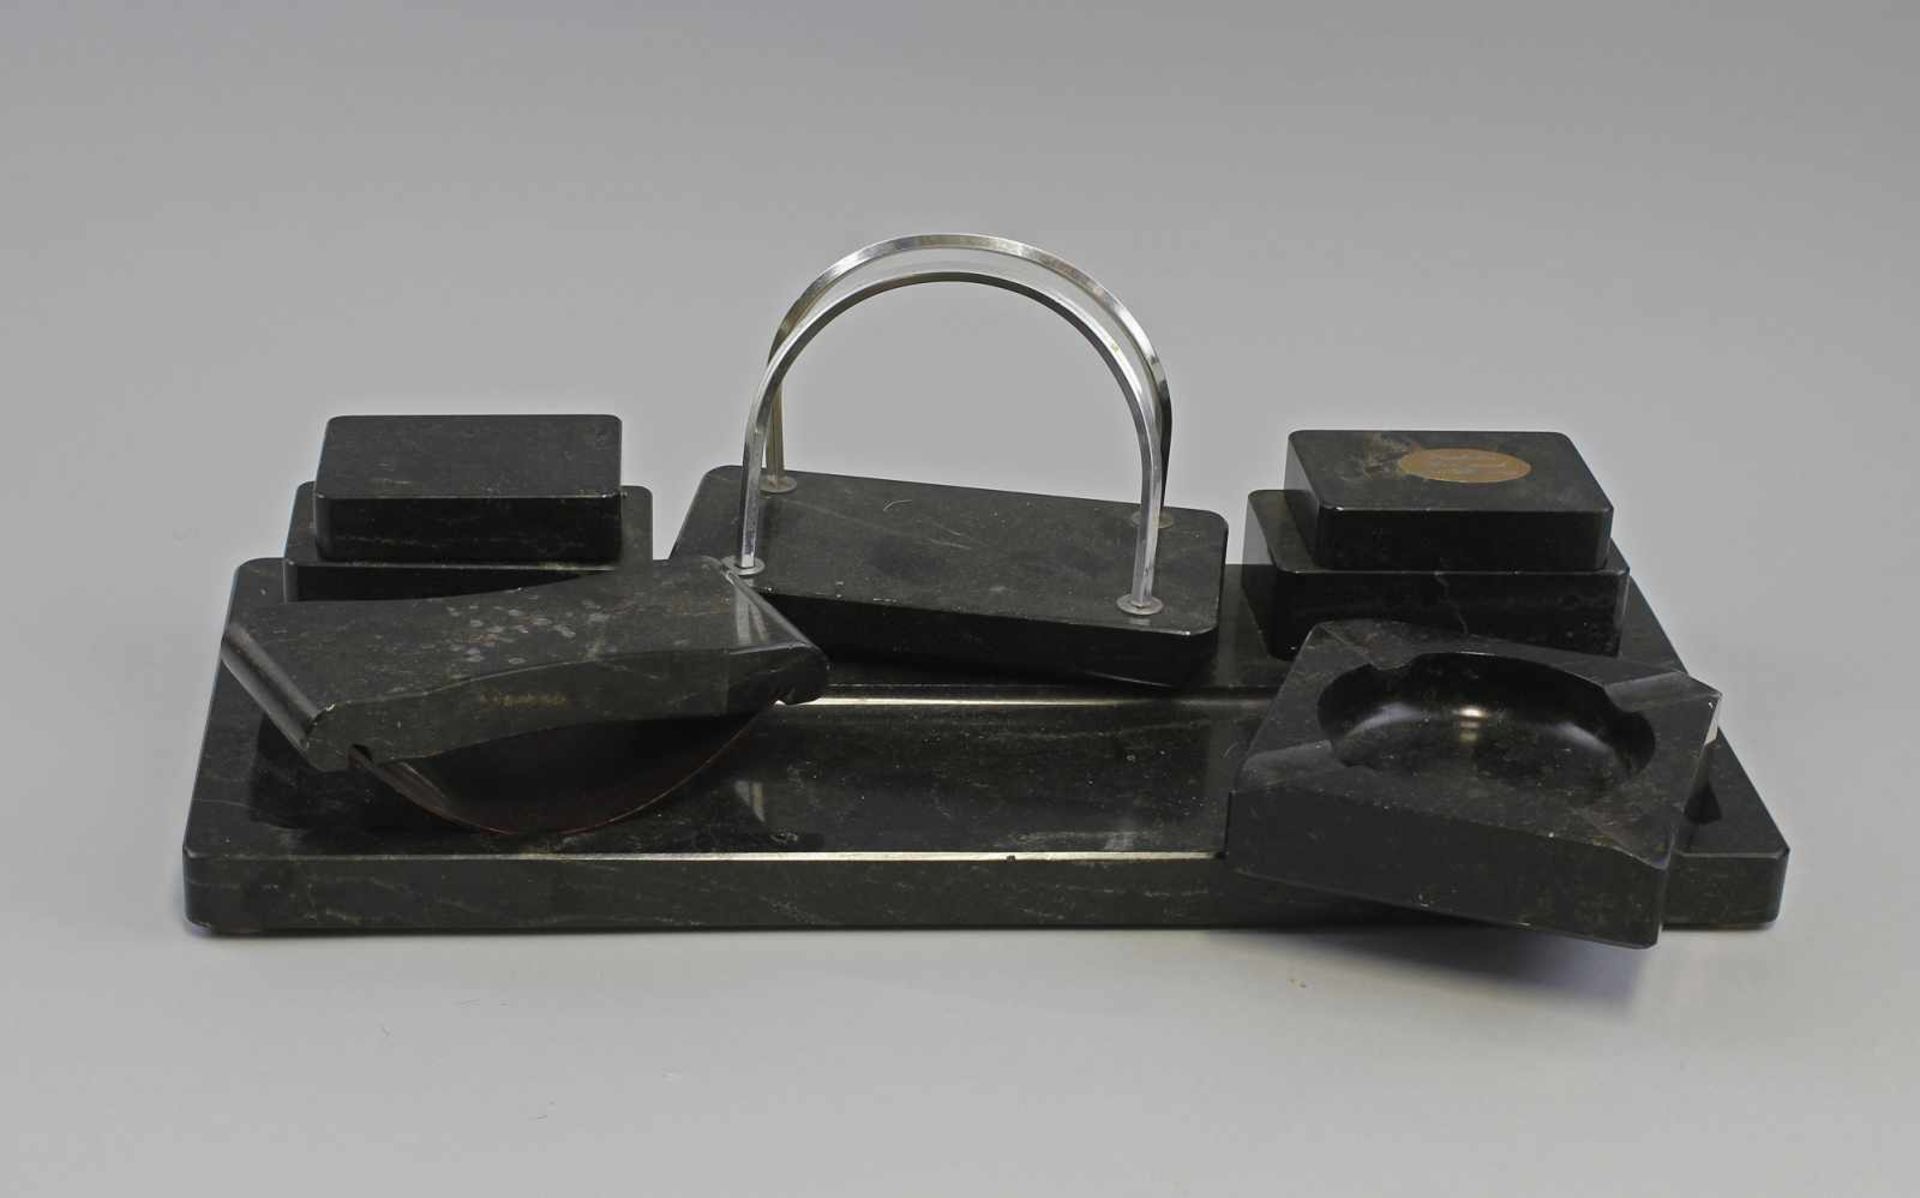 Schreibtischgarnitur1. H. 20. Jh., schwarz geäderter Stein, Ablagemulde, 2 Tintenfasshalter ohne